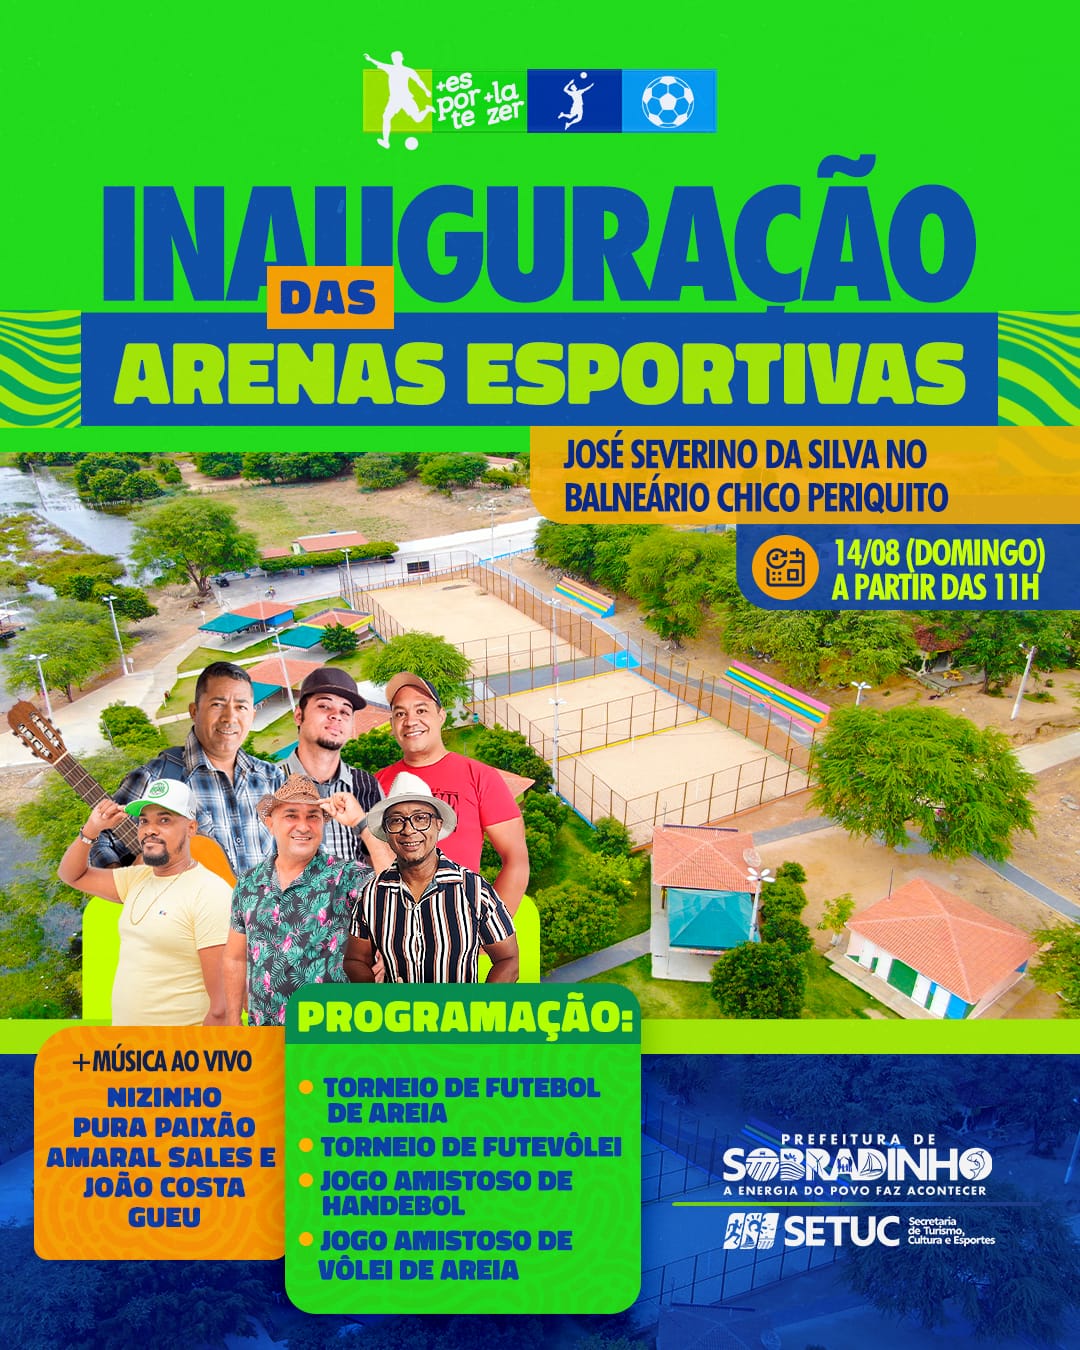 Prefeito Cleivynho Sampaio convida: neste domingo (14) acontecerá a inauguração das 3 Arenas Esportivas no Balneário do Chico Periquito, em Sobradinho